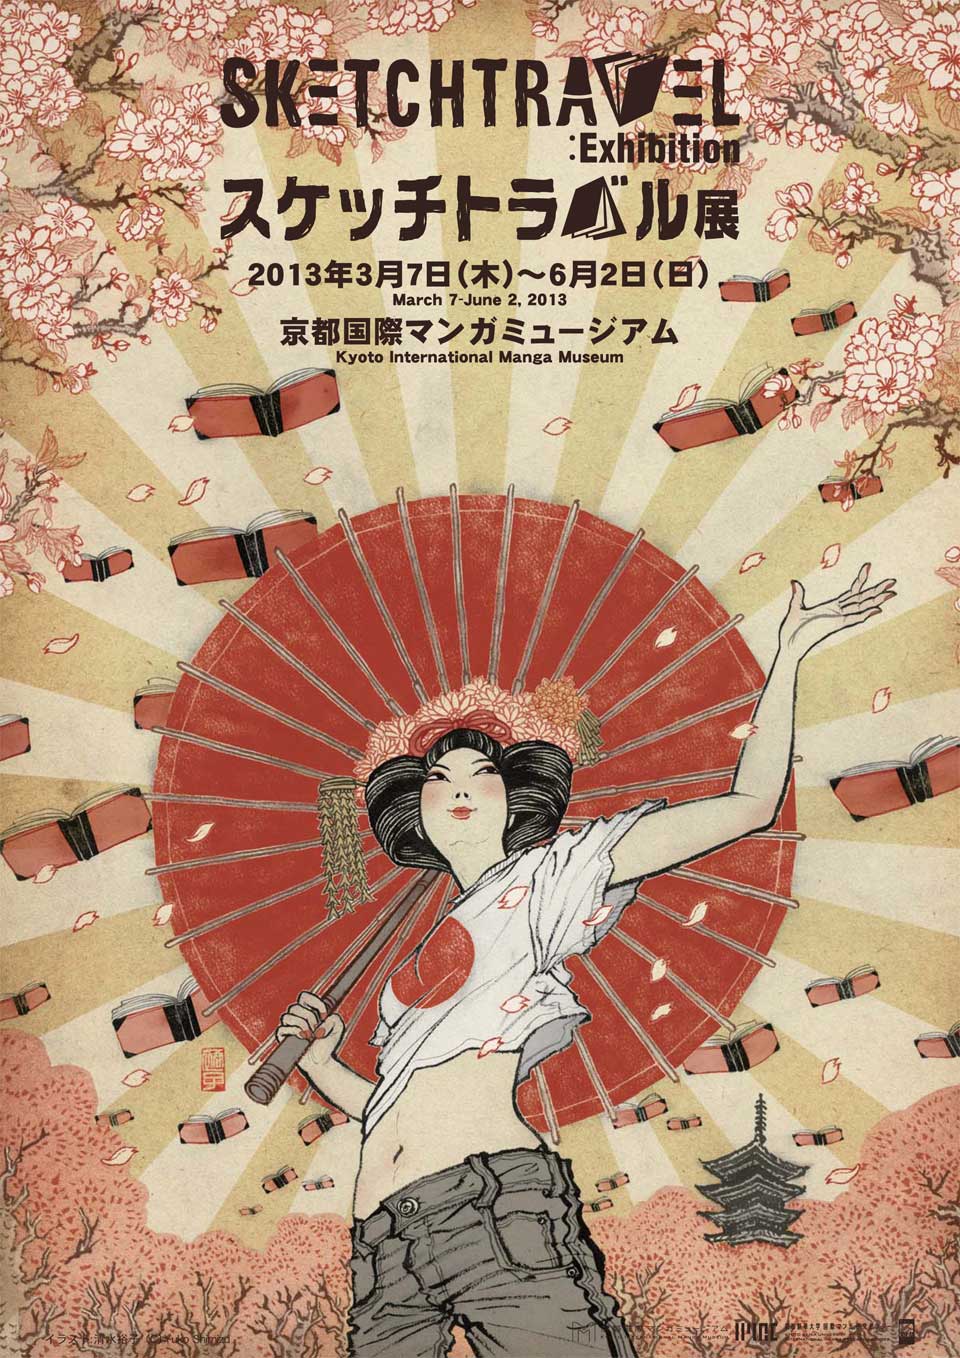 "yuko Shimizu" "sketch travel" "poster"